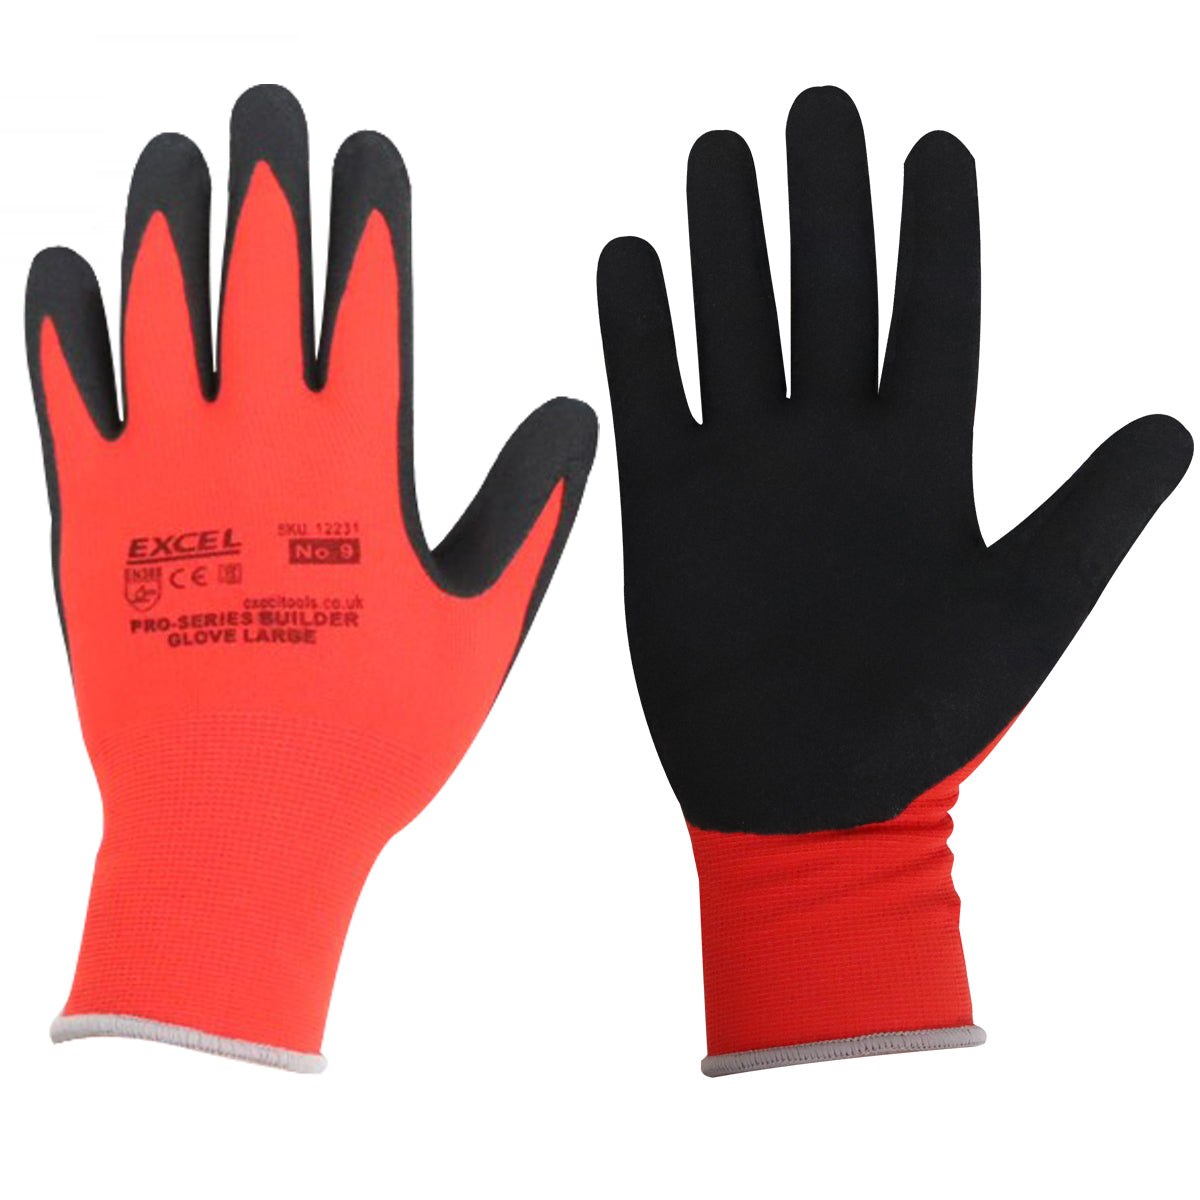 Excel Pro-Series Builder Gloves Red & Black Size L Pack of 12